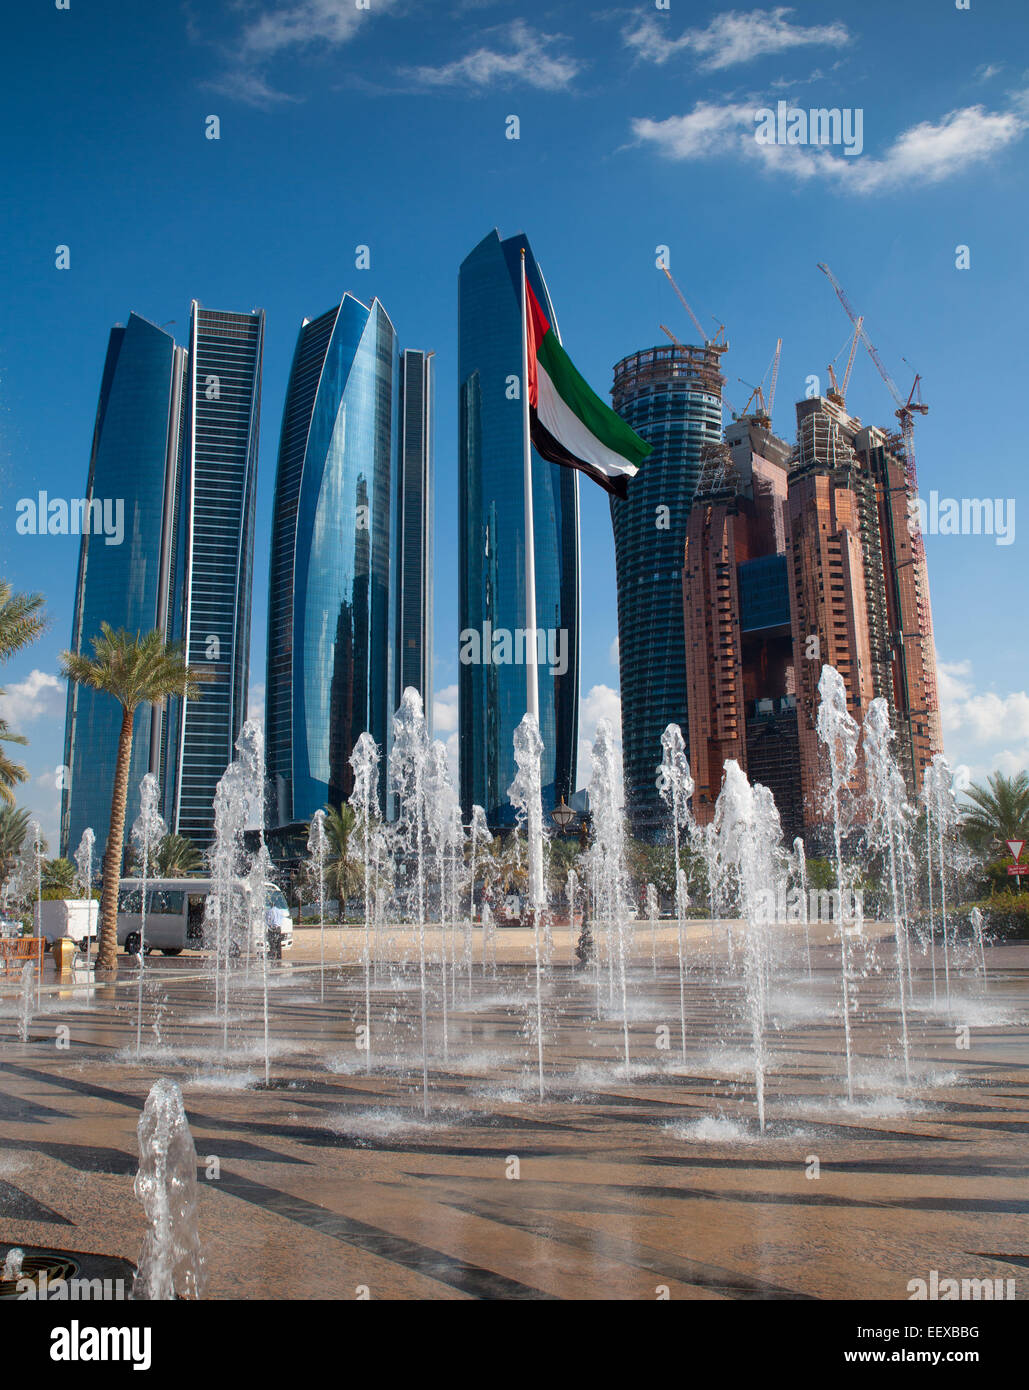 Gratte-ciel moderne d'Abu Dhabi, capitale des Emirats Arabes Unis. Fontaines et des EAU drapeau en premier plan. Ville à l'arrière-plan. Banque D'Images